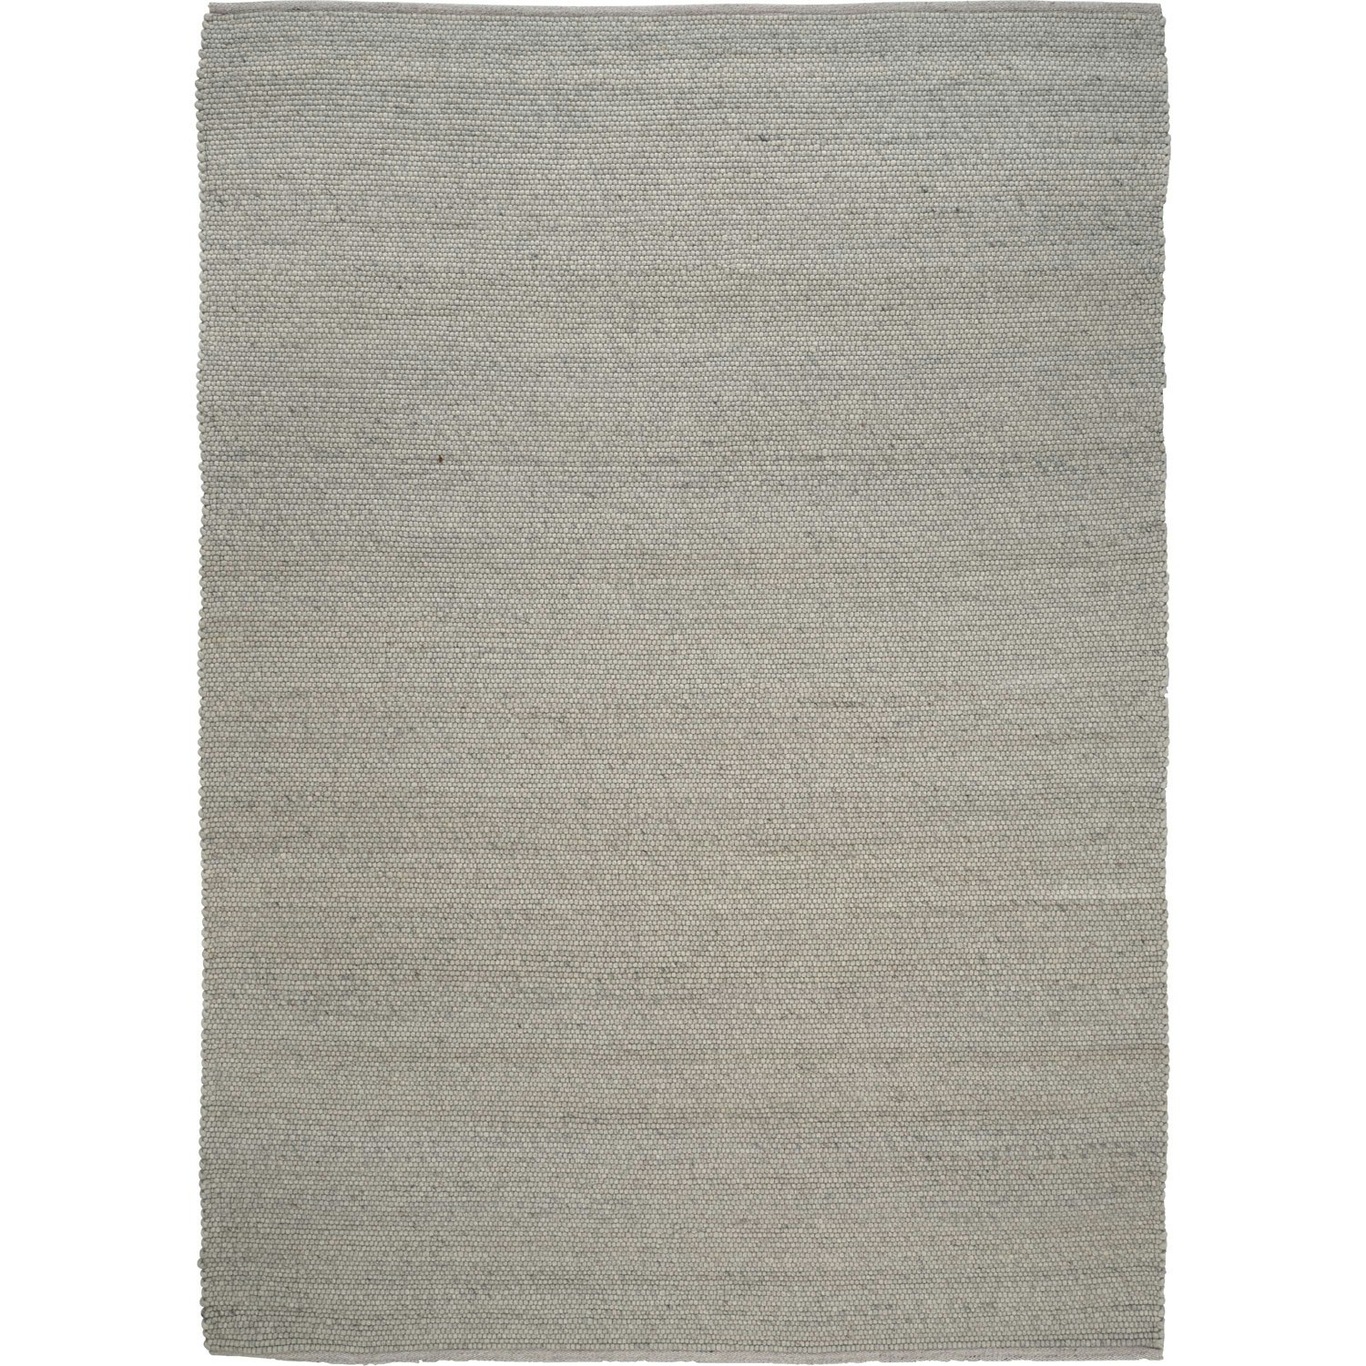 Merino Matto 200x300 cm, Concrete